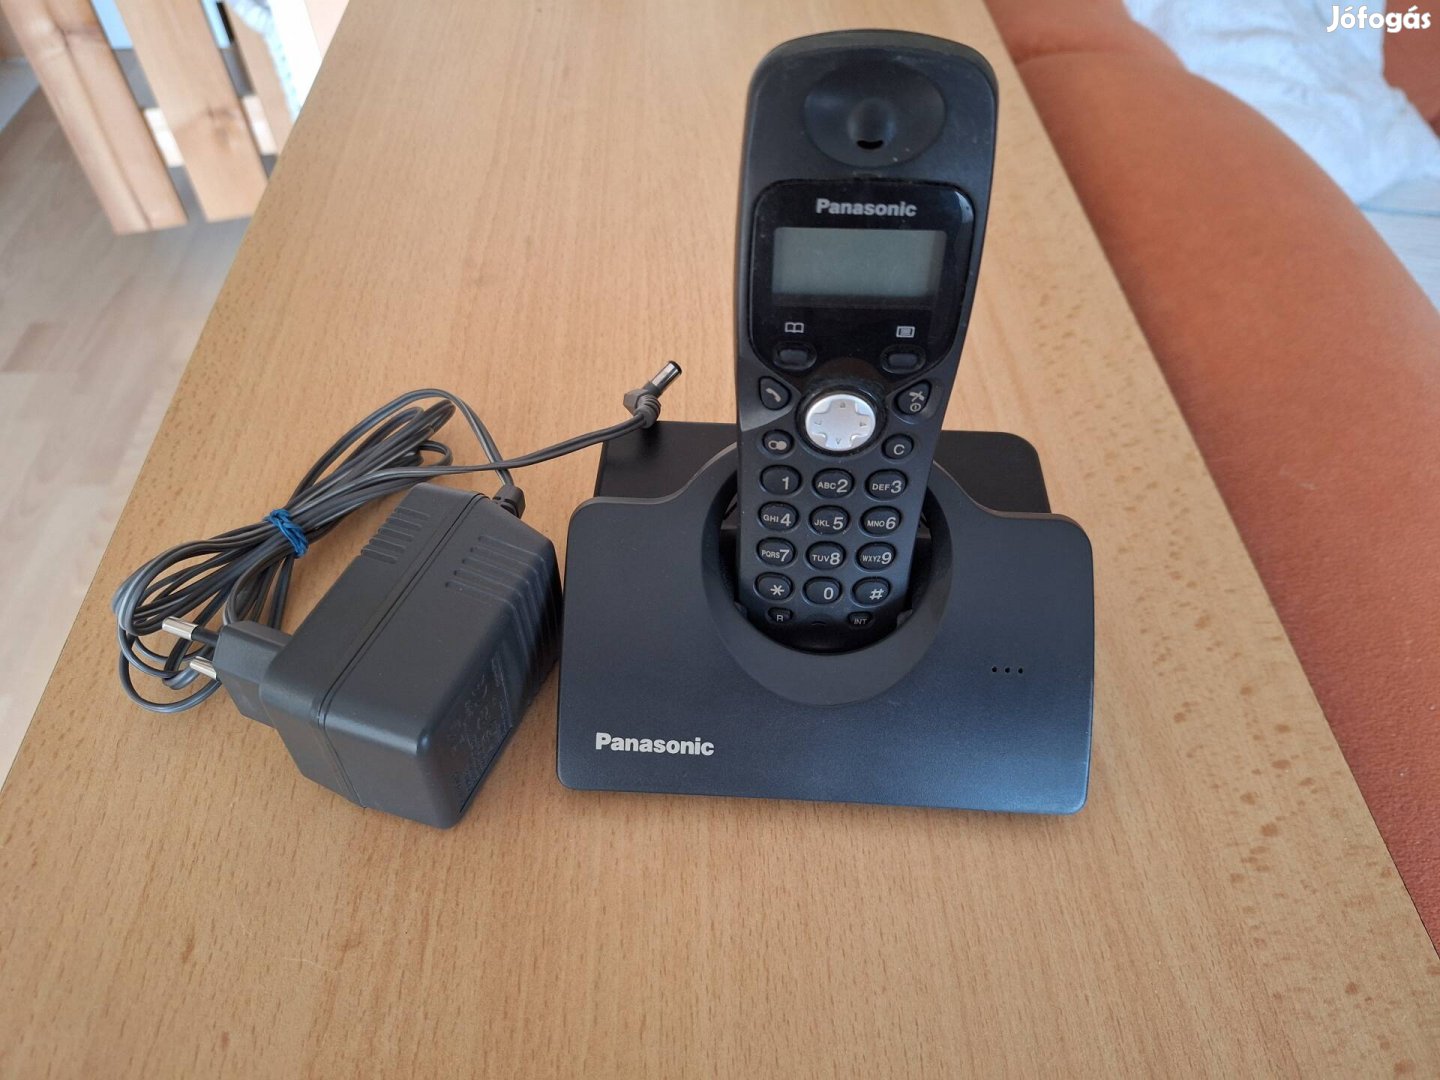 Panasonic vezeték nélküli telefon.